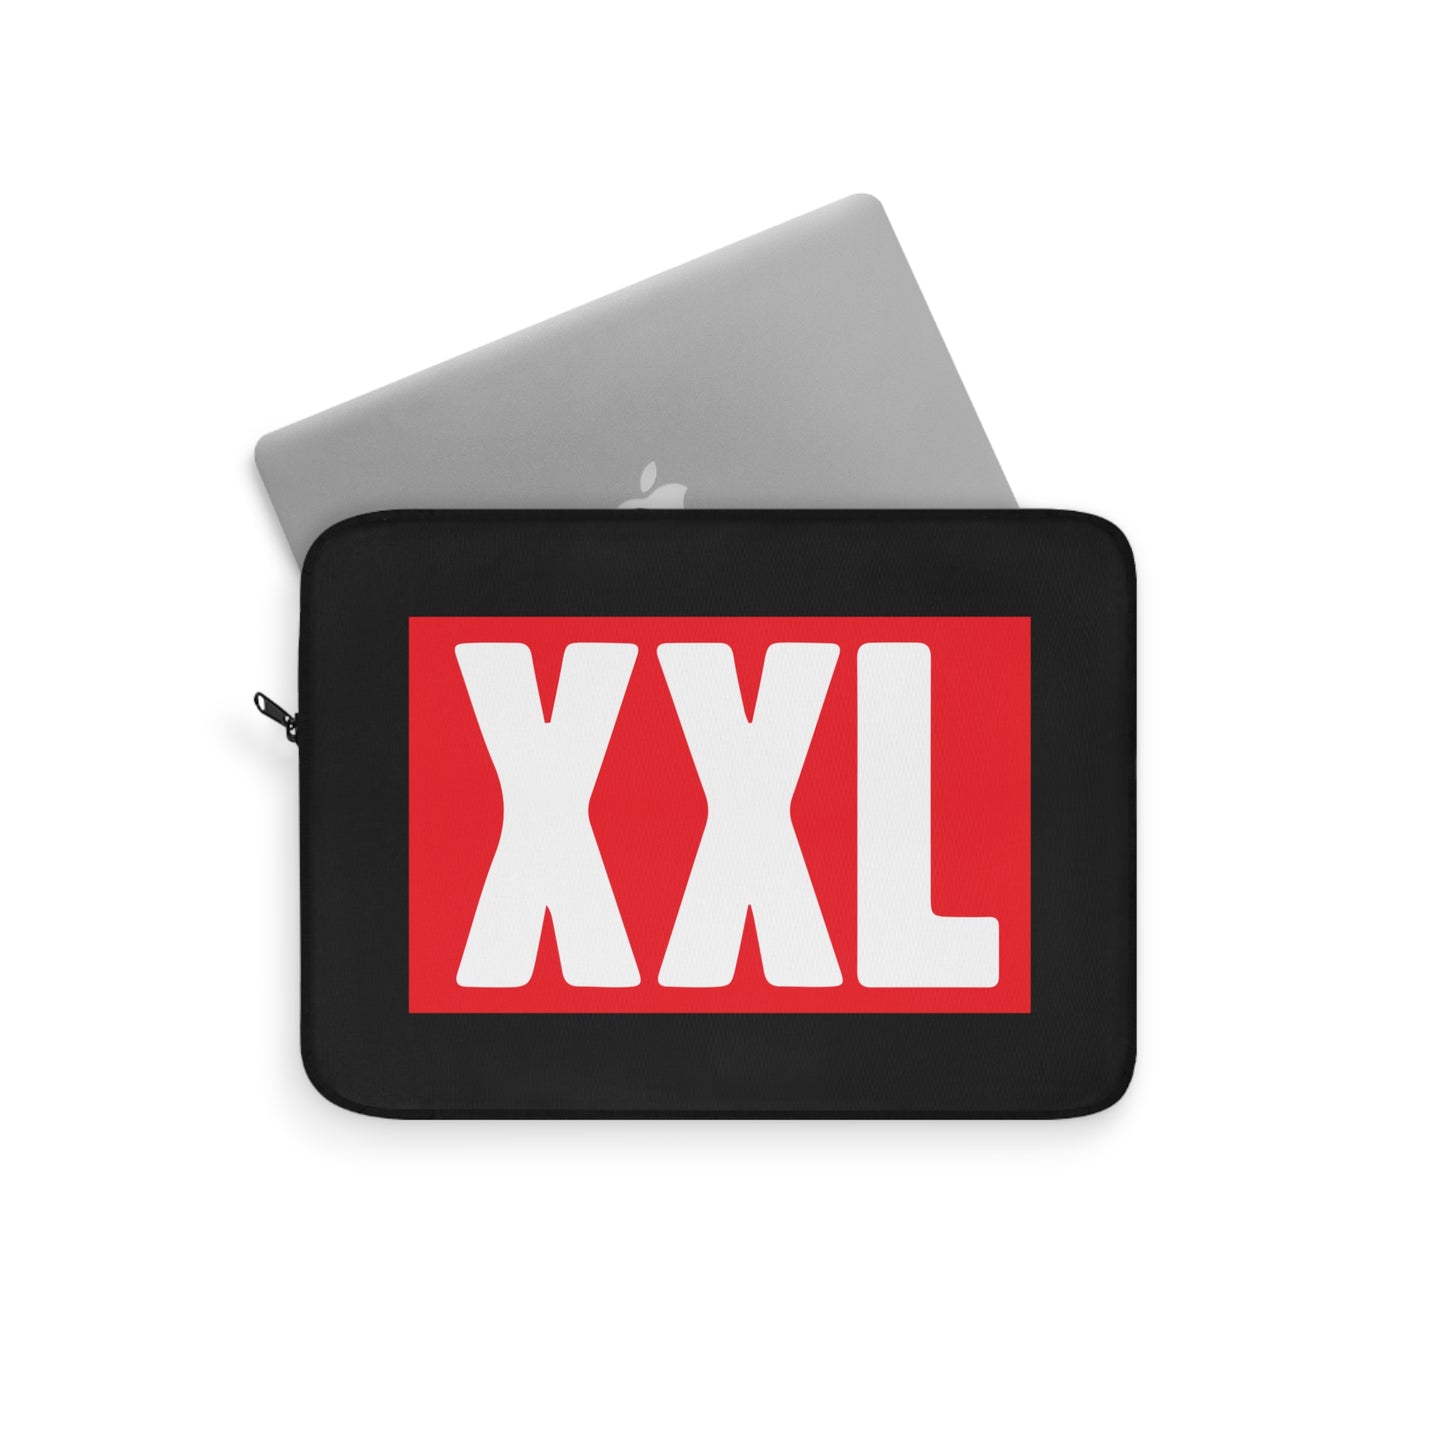 XXL Laptop Sleeve